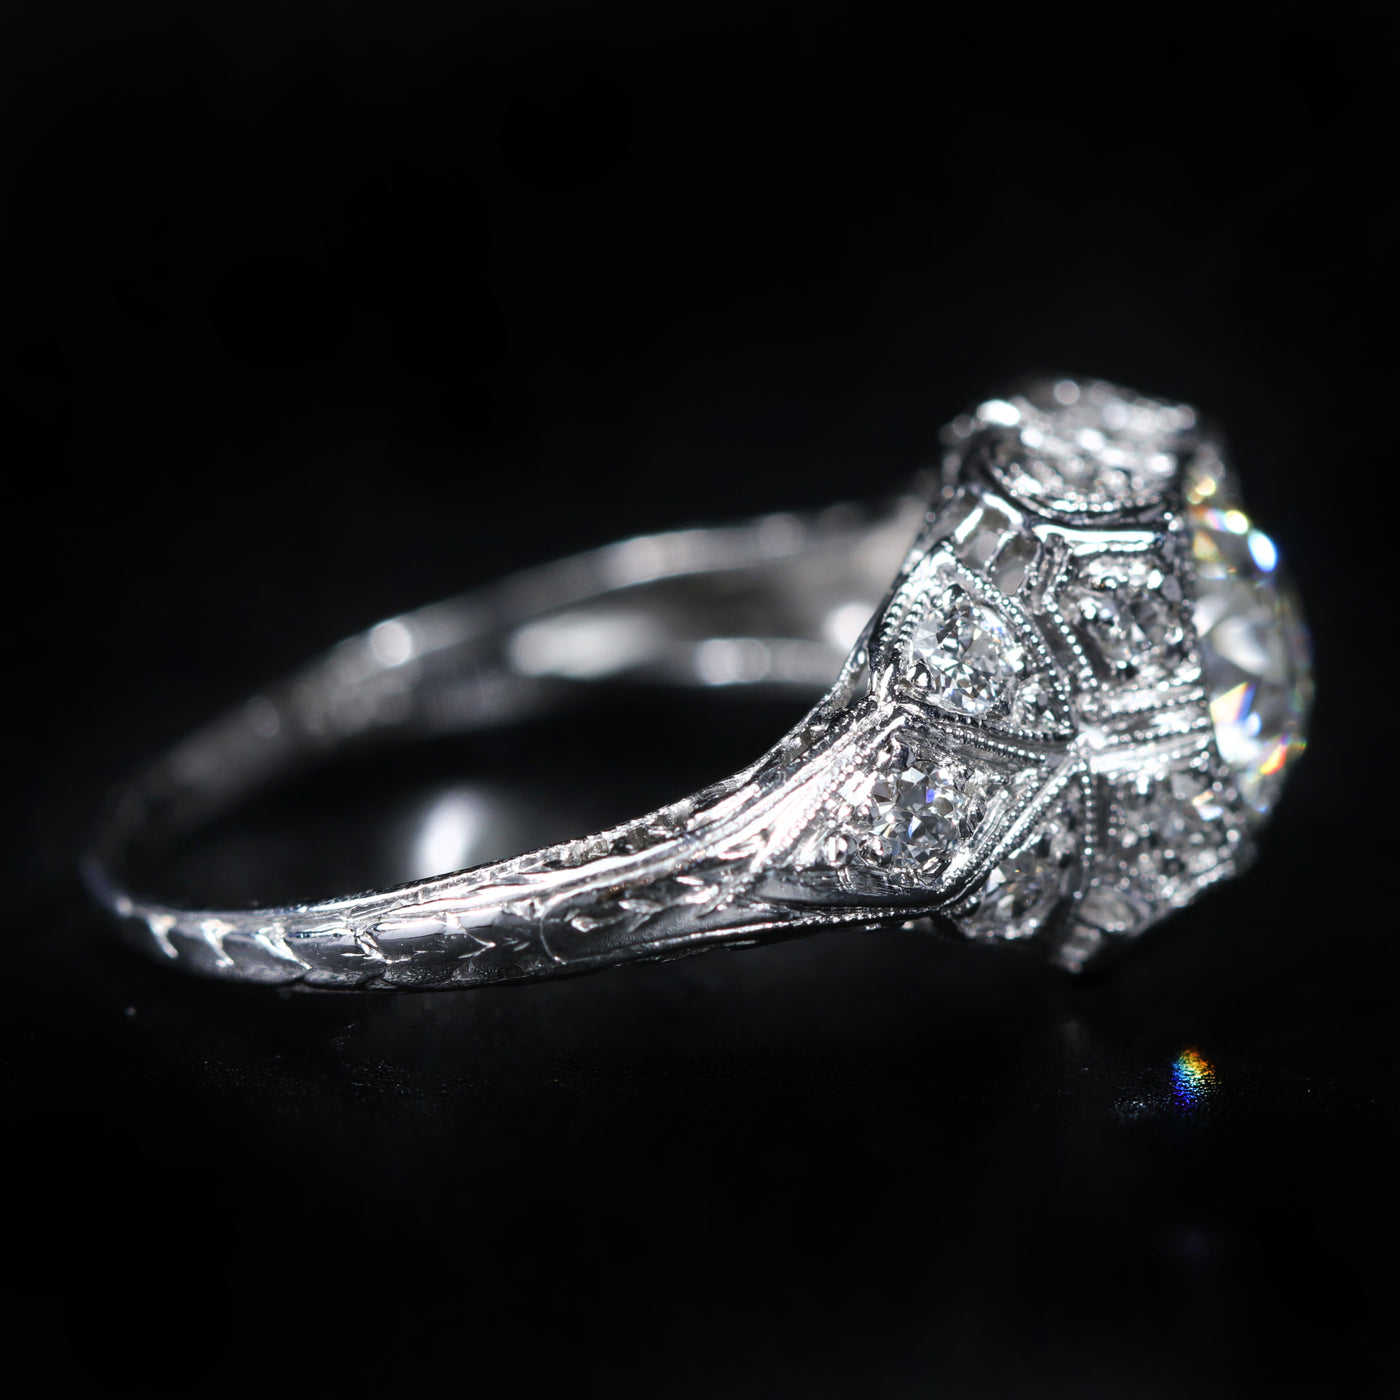 Art Deco Platinum 1.17 Carat Old European Cut Diamond Engagement Ring